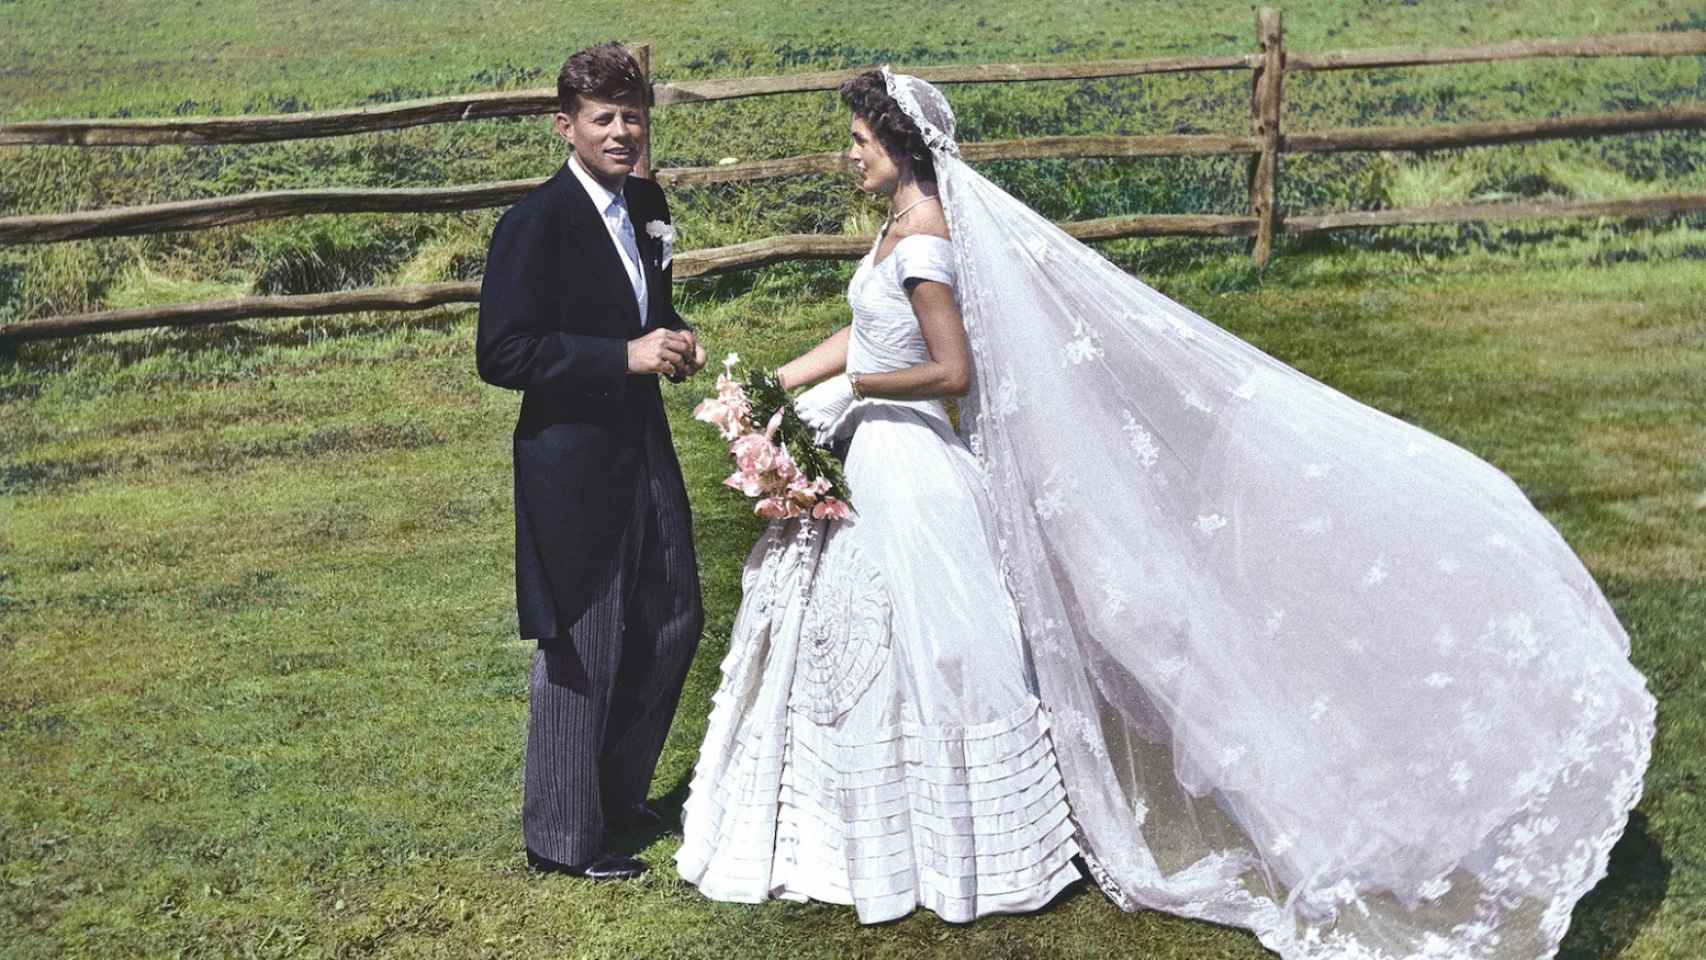 La boda de Kennedy y Jackie